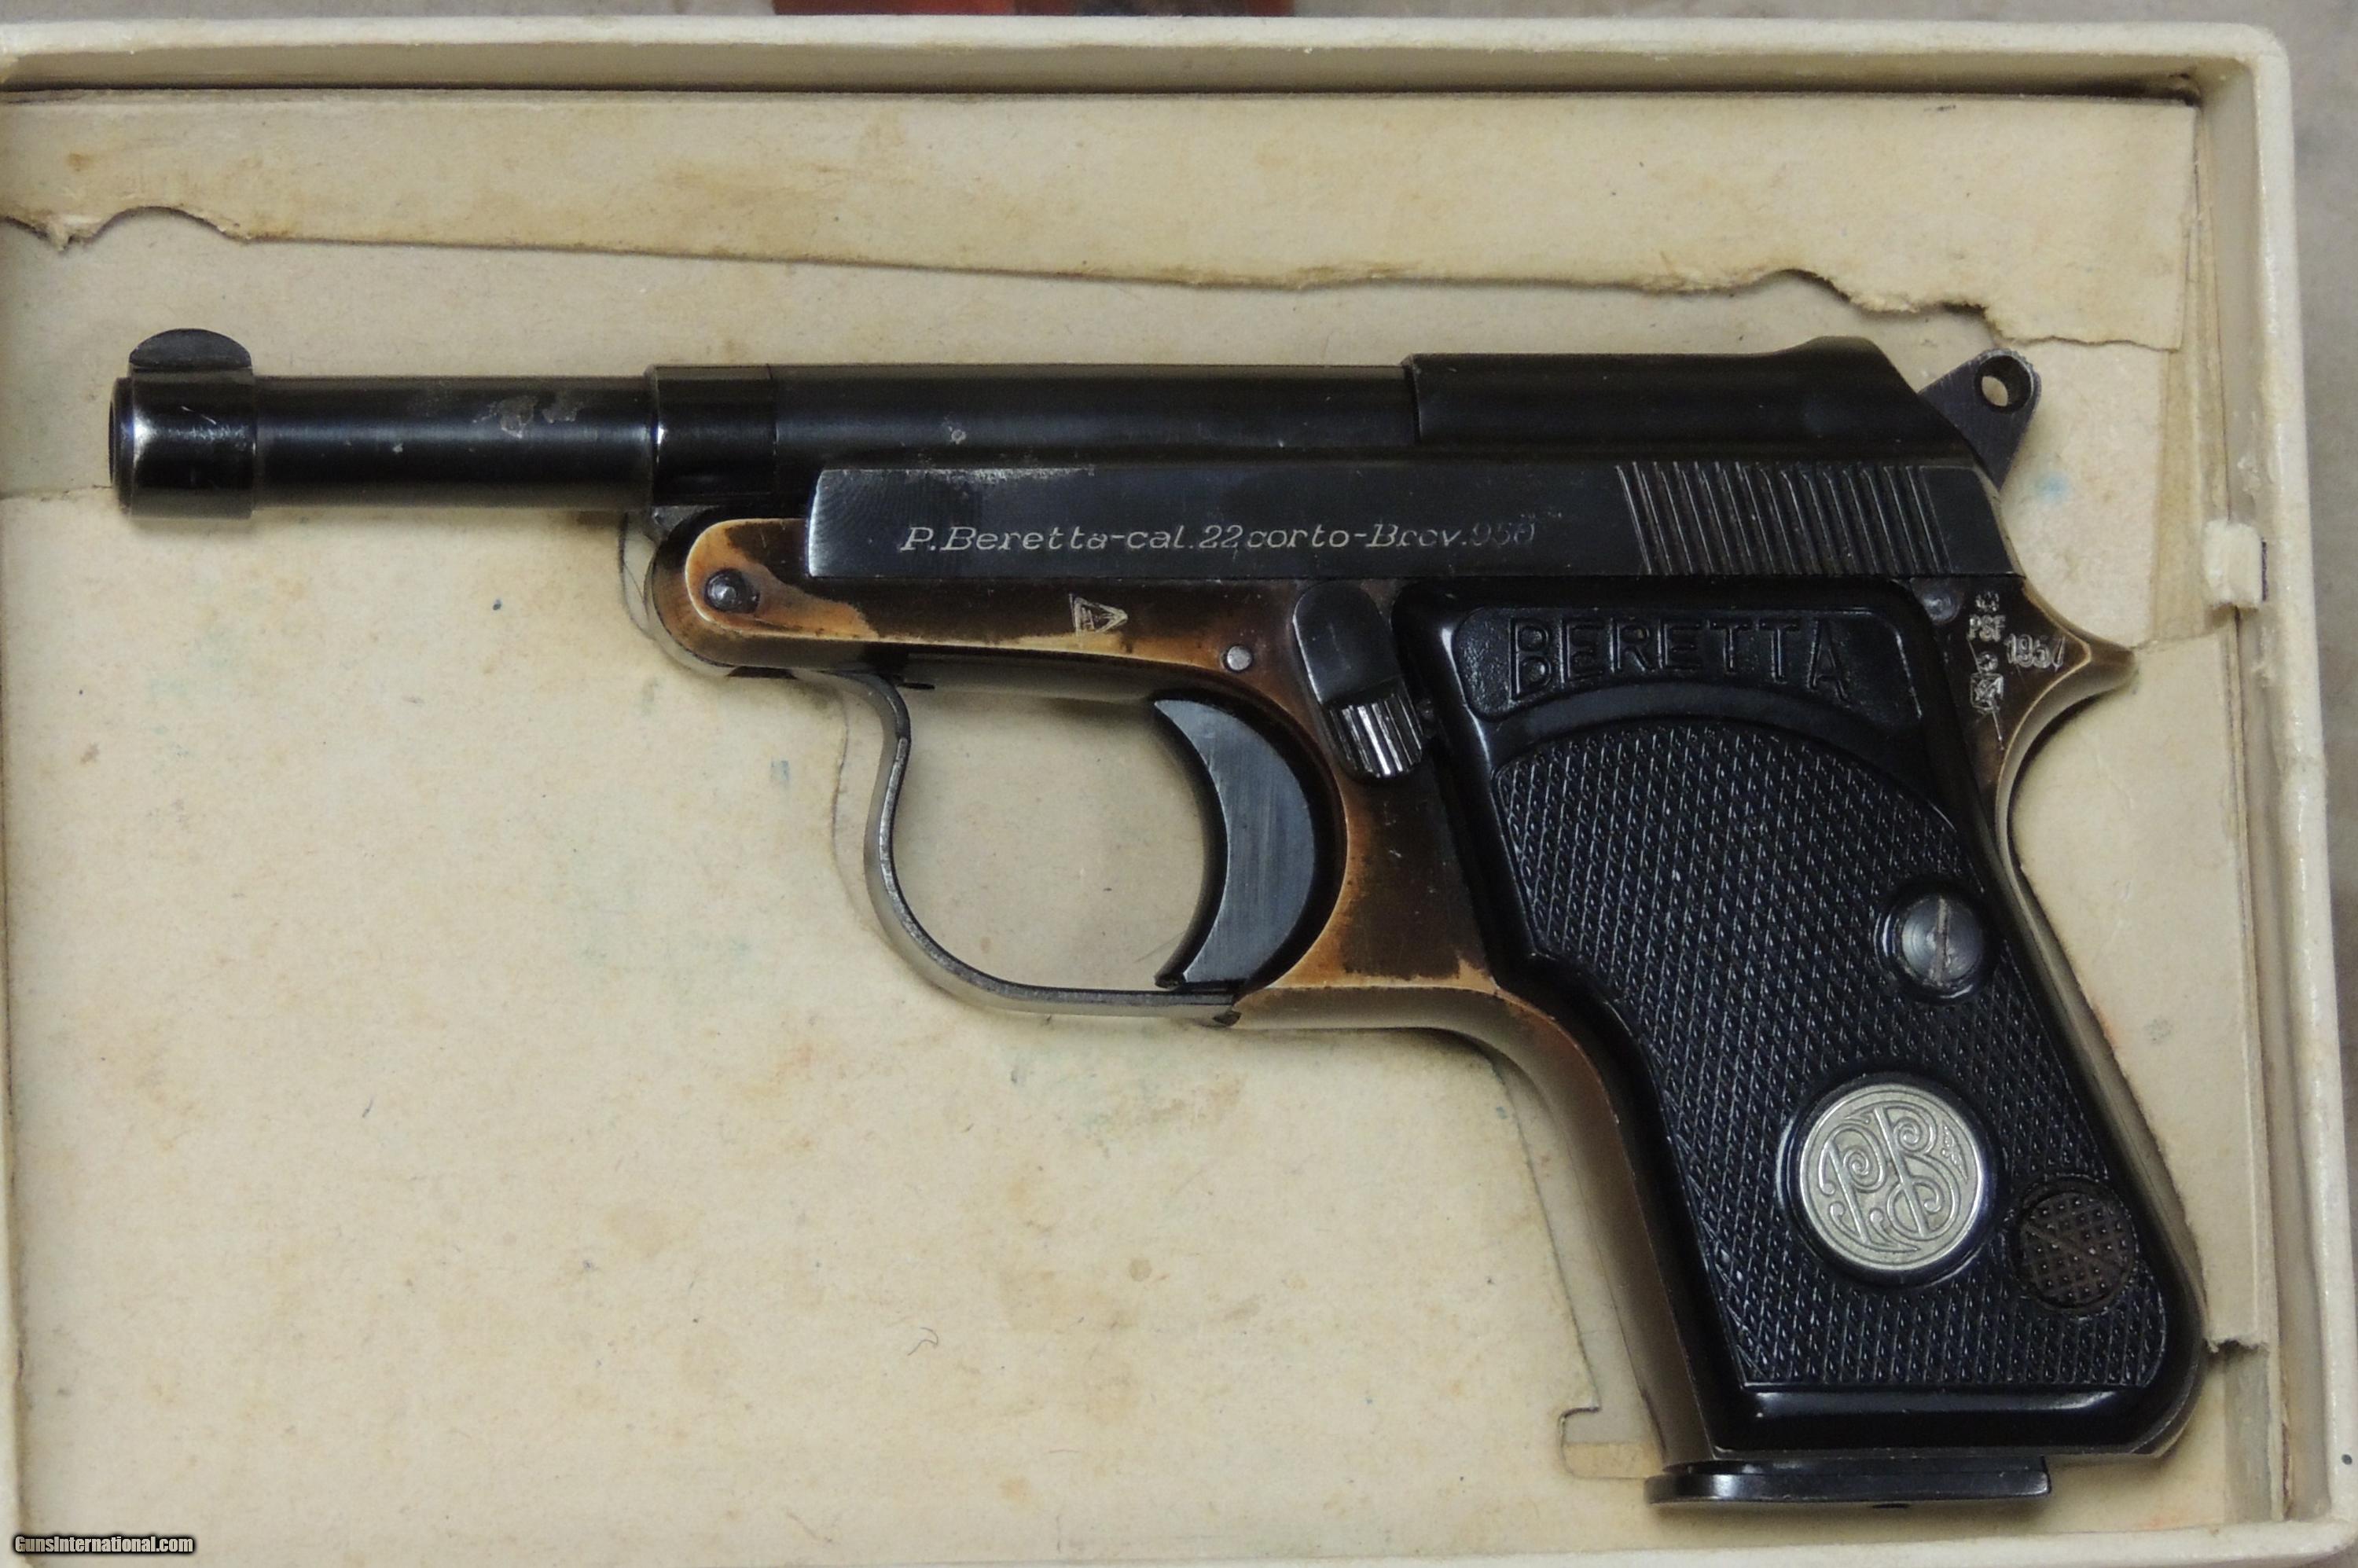 Beretta 950 Minx M4 .22 Short Caliber Pistol w/ Box S/N 74493CC